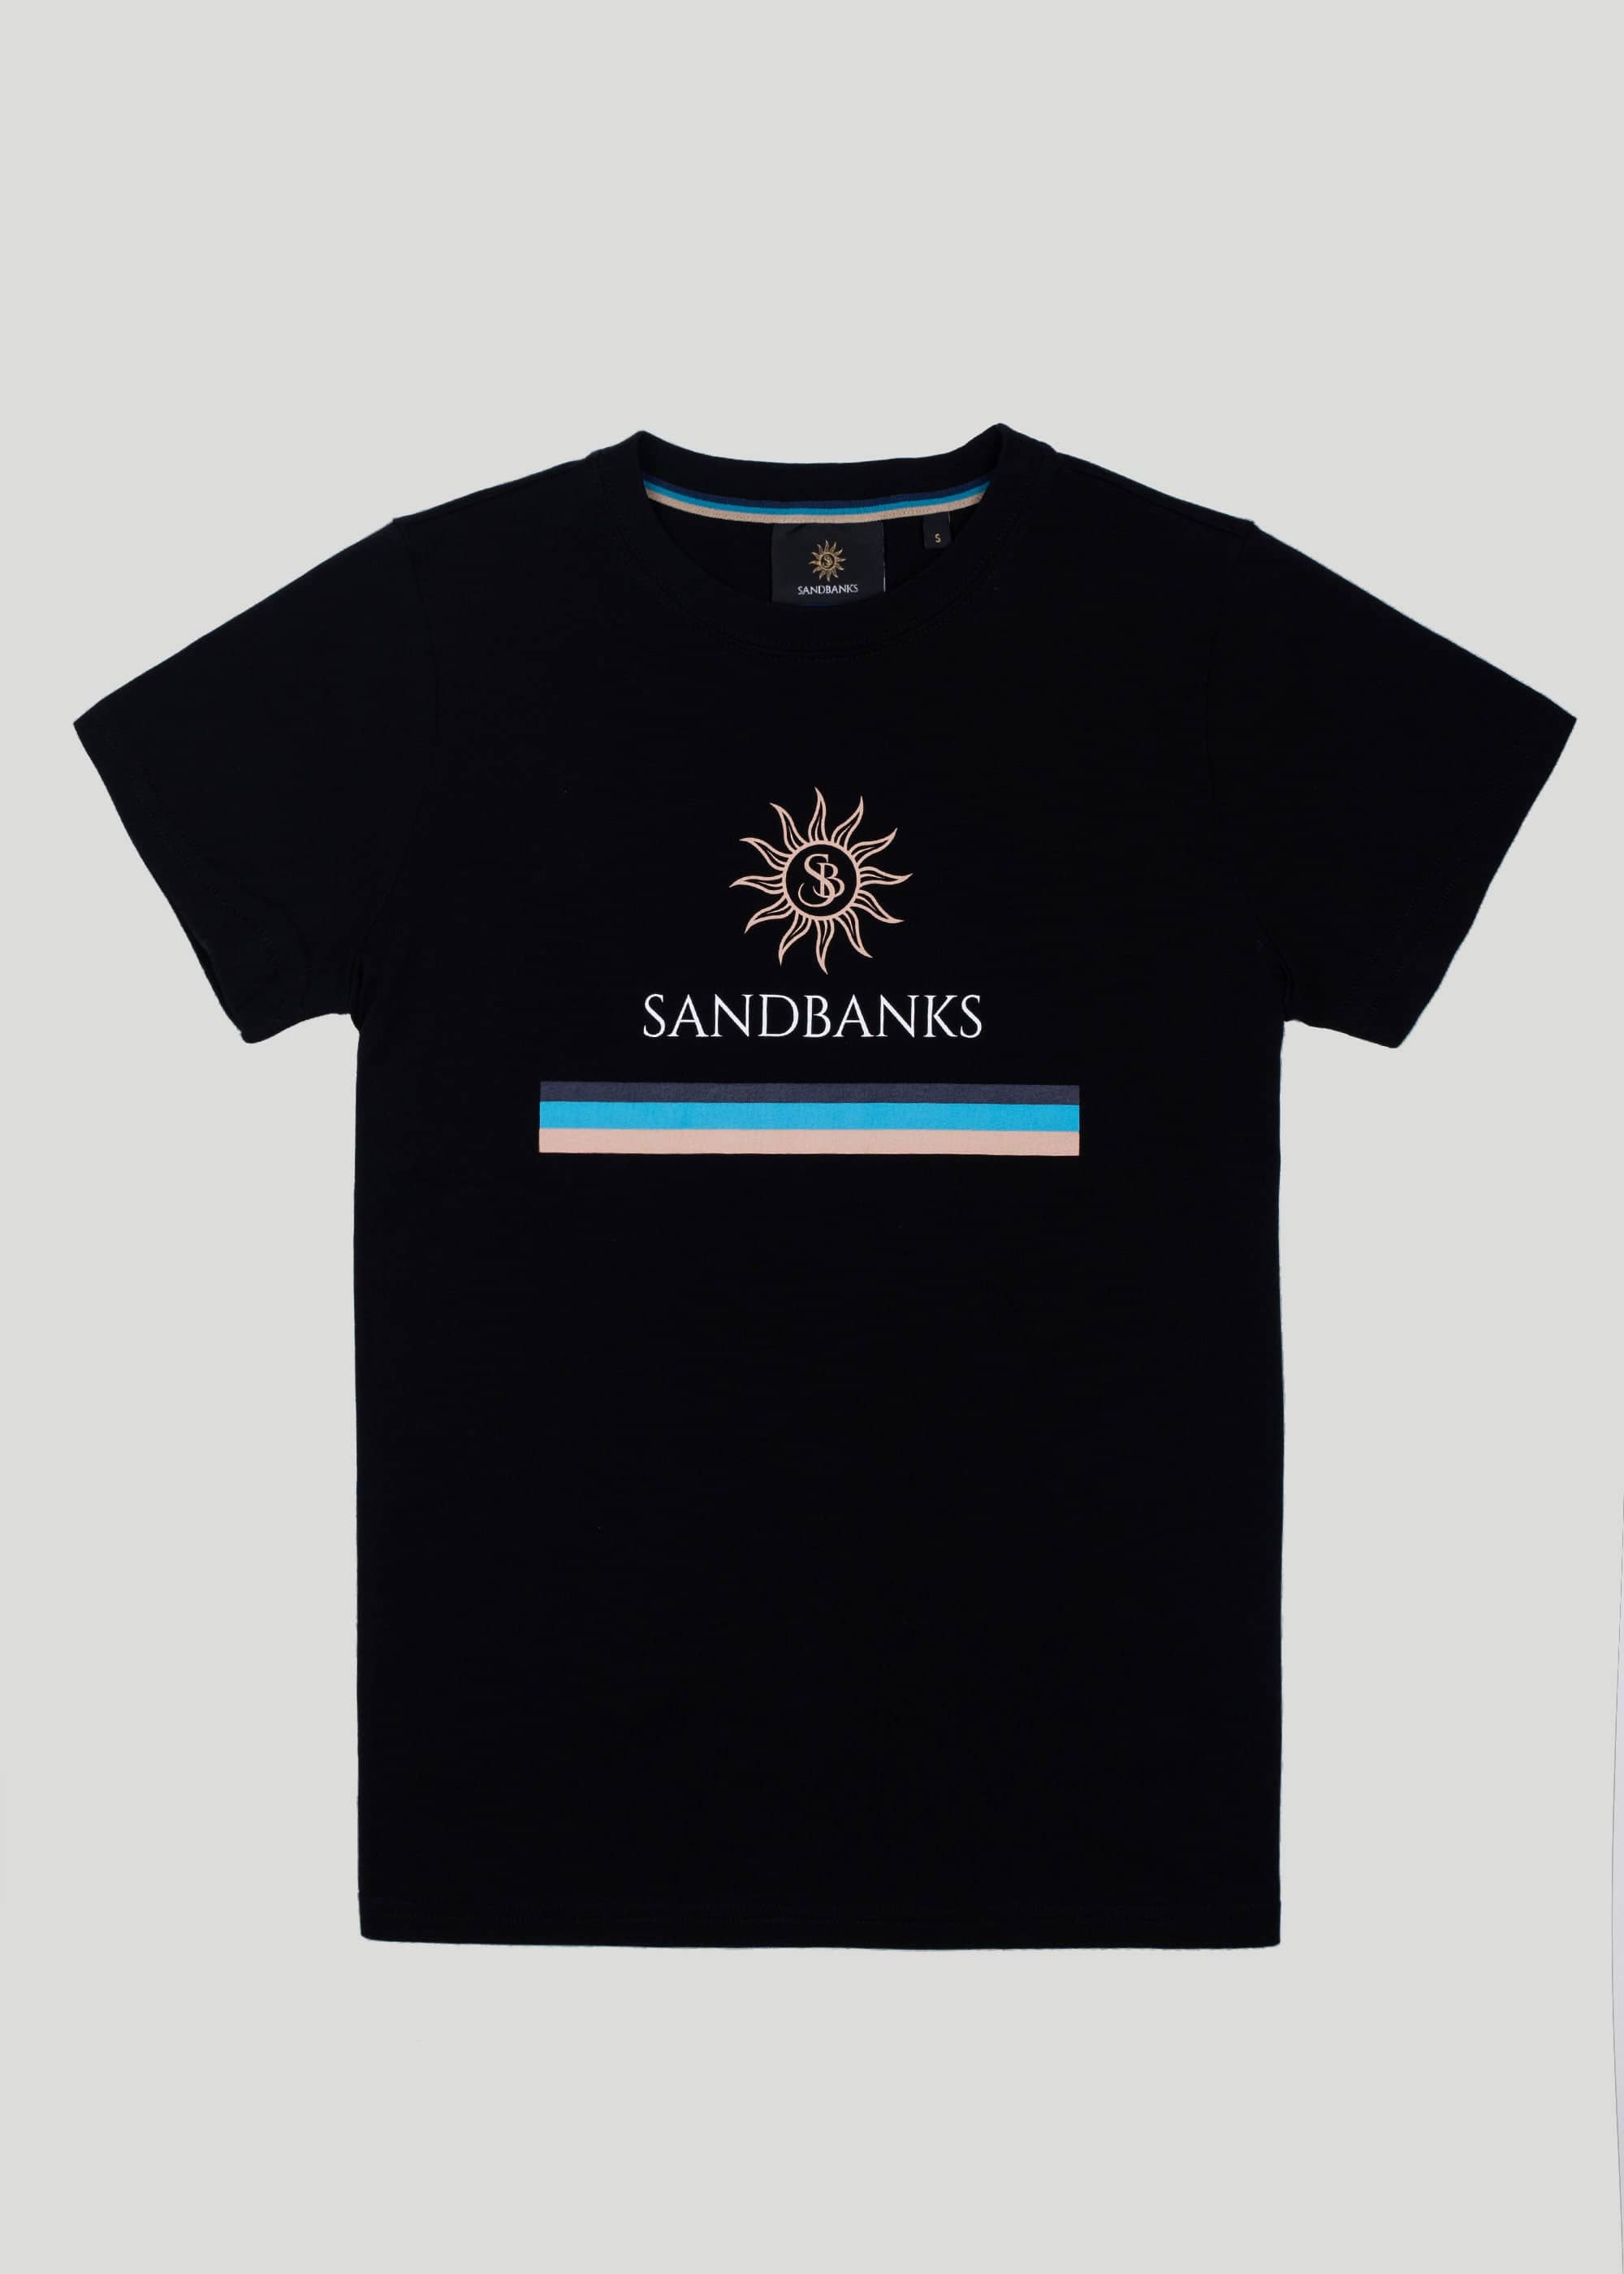 Sandbanks Women's OG Logo T-Shirt - Black - sandbanksco.com